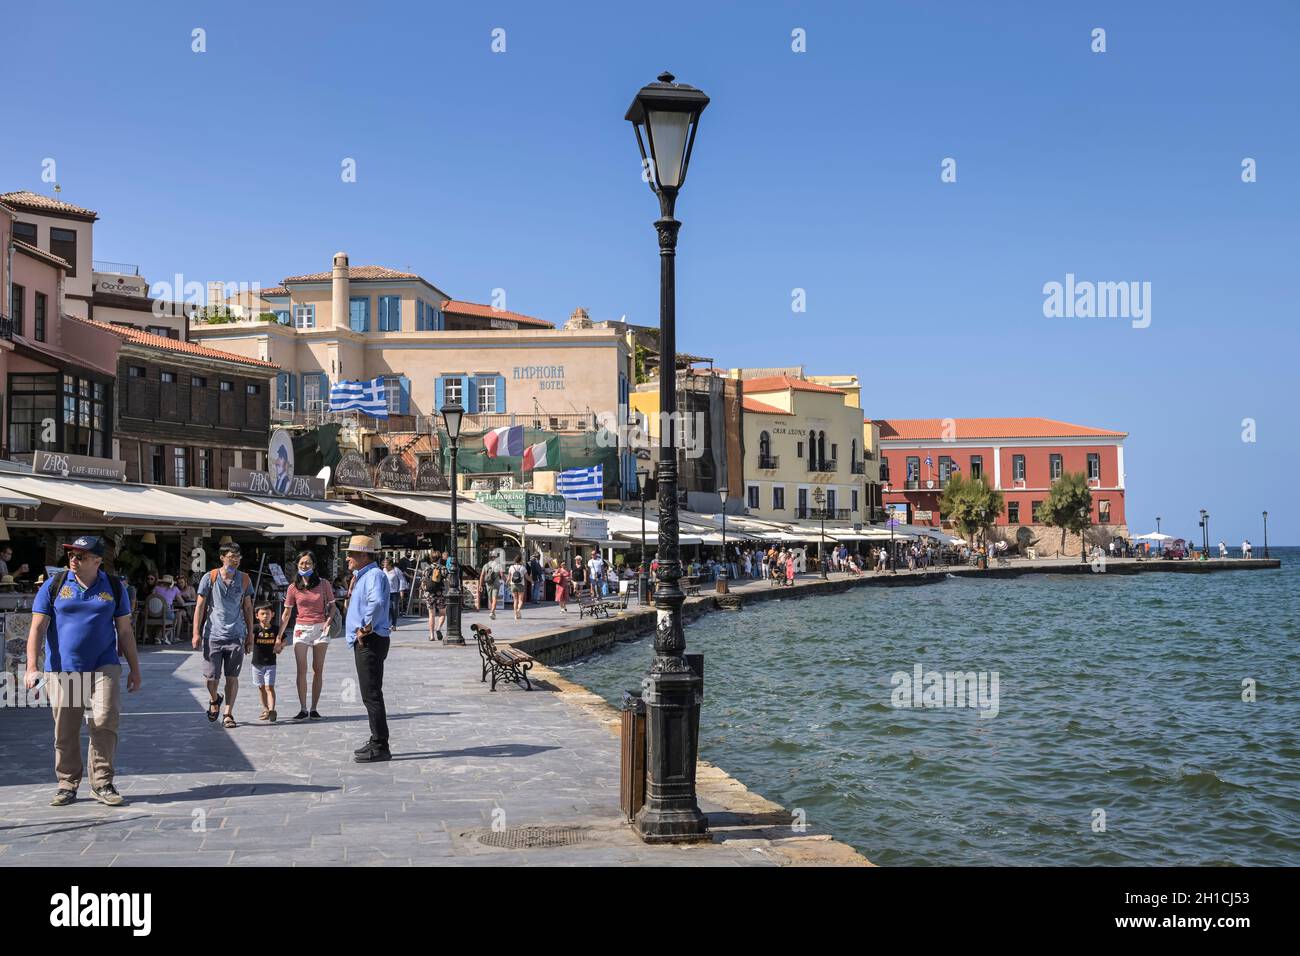 Venezianischer Hafen, Chania, Kreta, Griechenland Foto Stock